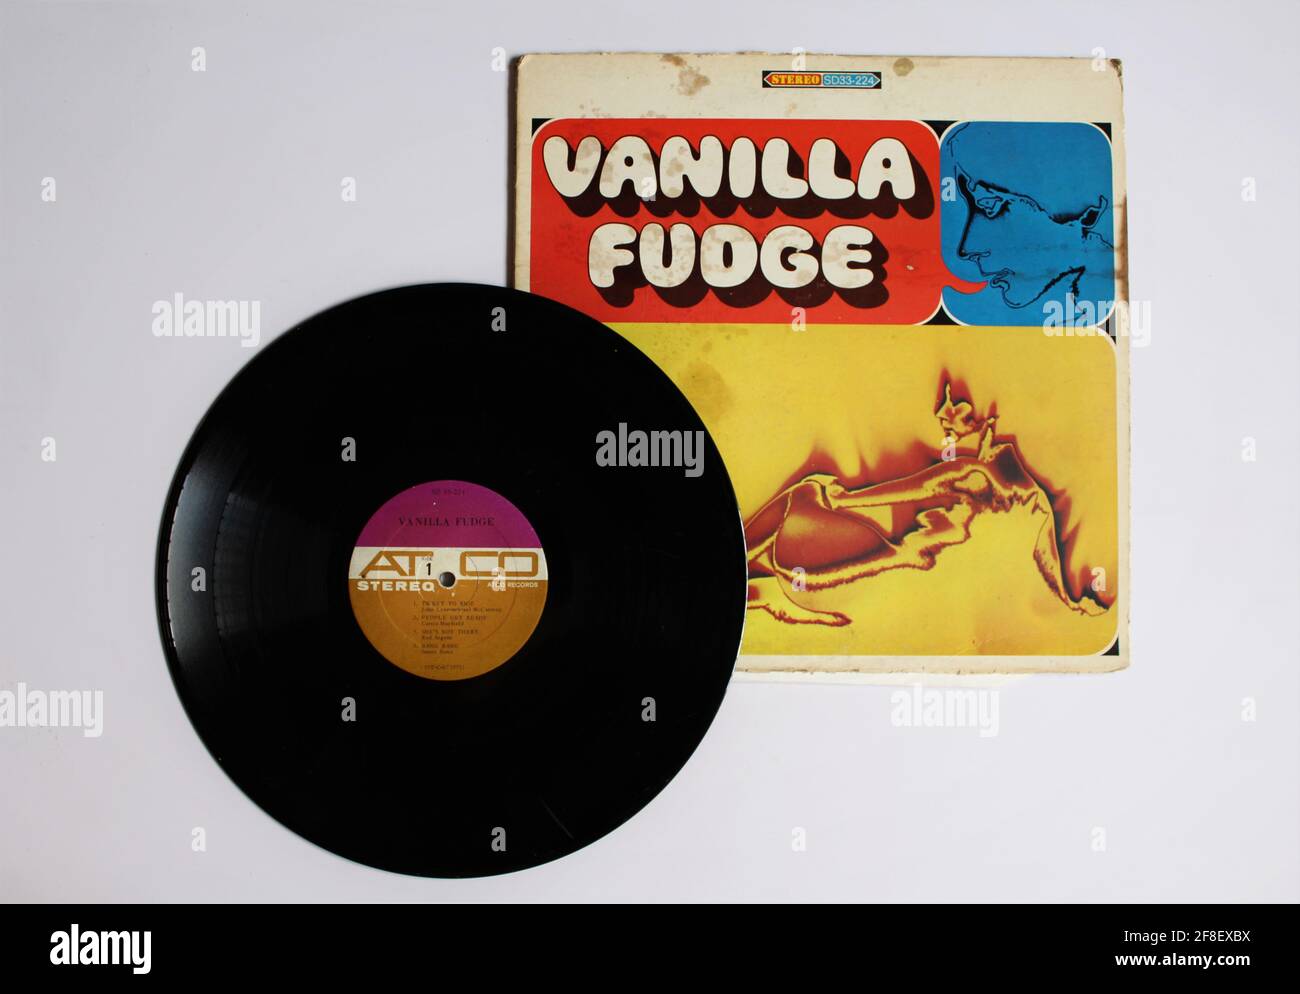 Gruppo rock psichedelico americano Vanilla Fudge album musicale su disco vinile LP. Intitolato: Fuga di vaniglia Foto Stock